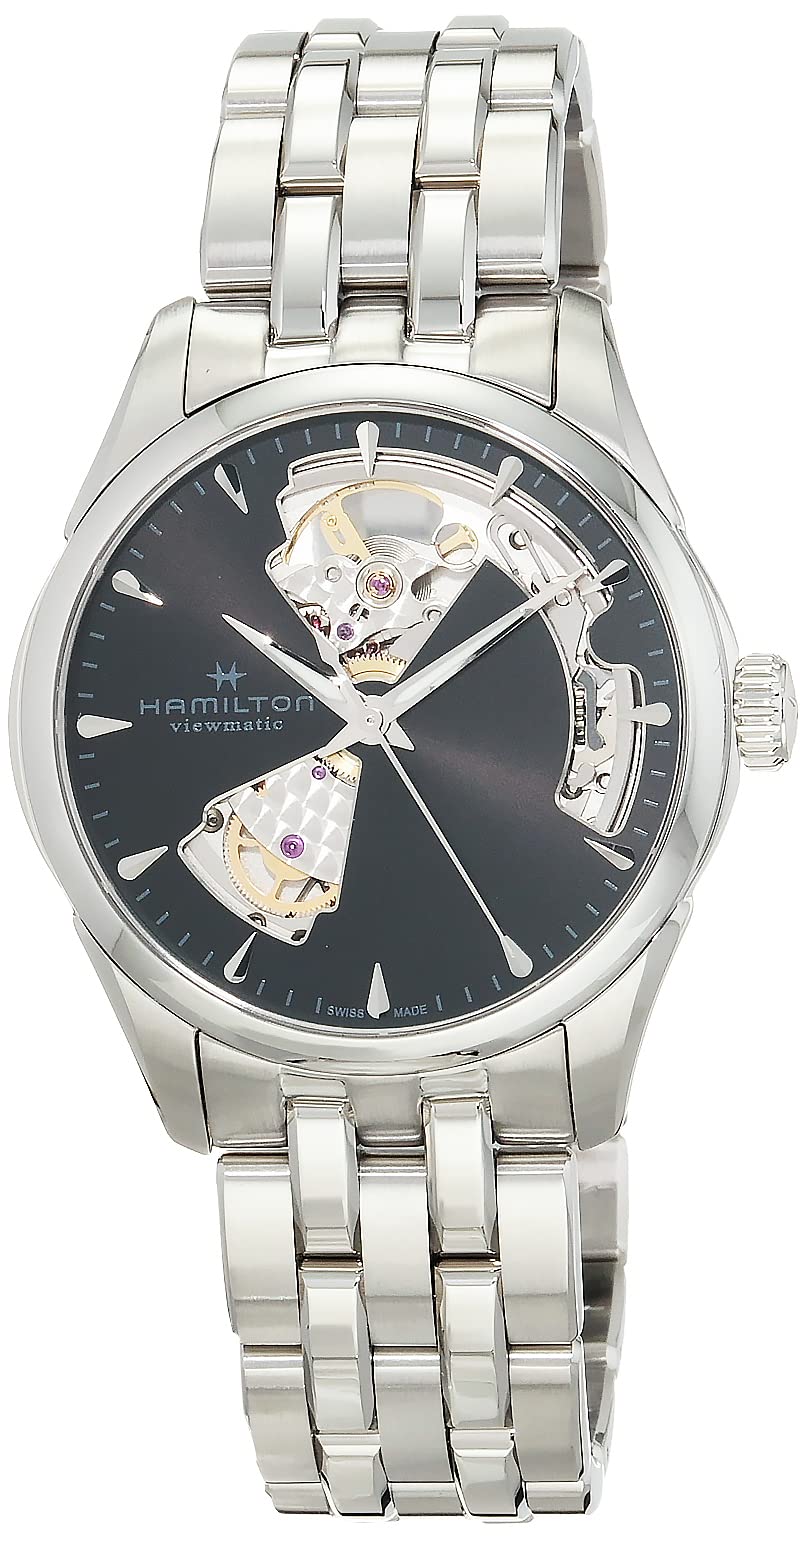 [HAMILTON(ハミルトン)] HAMILTON(ハミルトン) 腕時計 正規保証 ジャズマスター オート正規輸入品 H32215130 メンズ